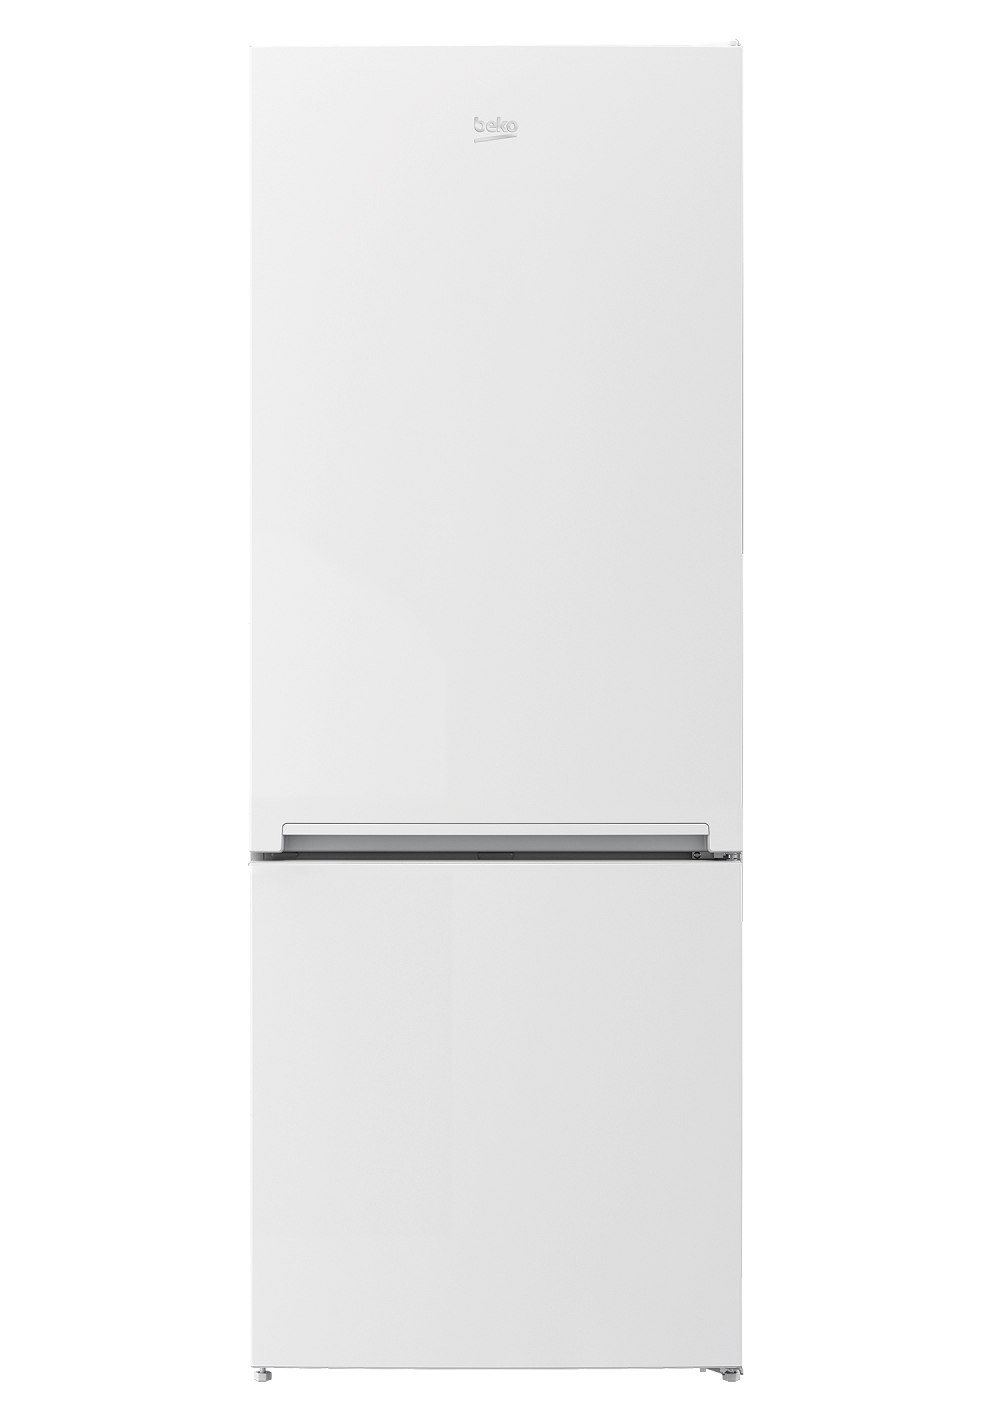 870520 MB Double Door Refrigerator